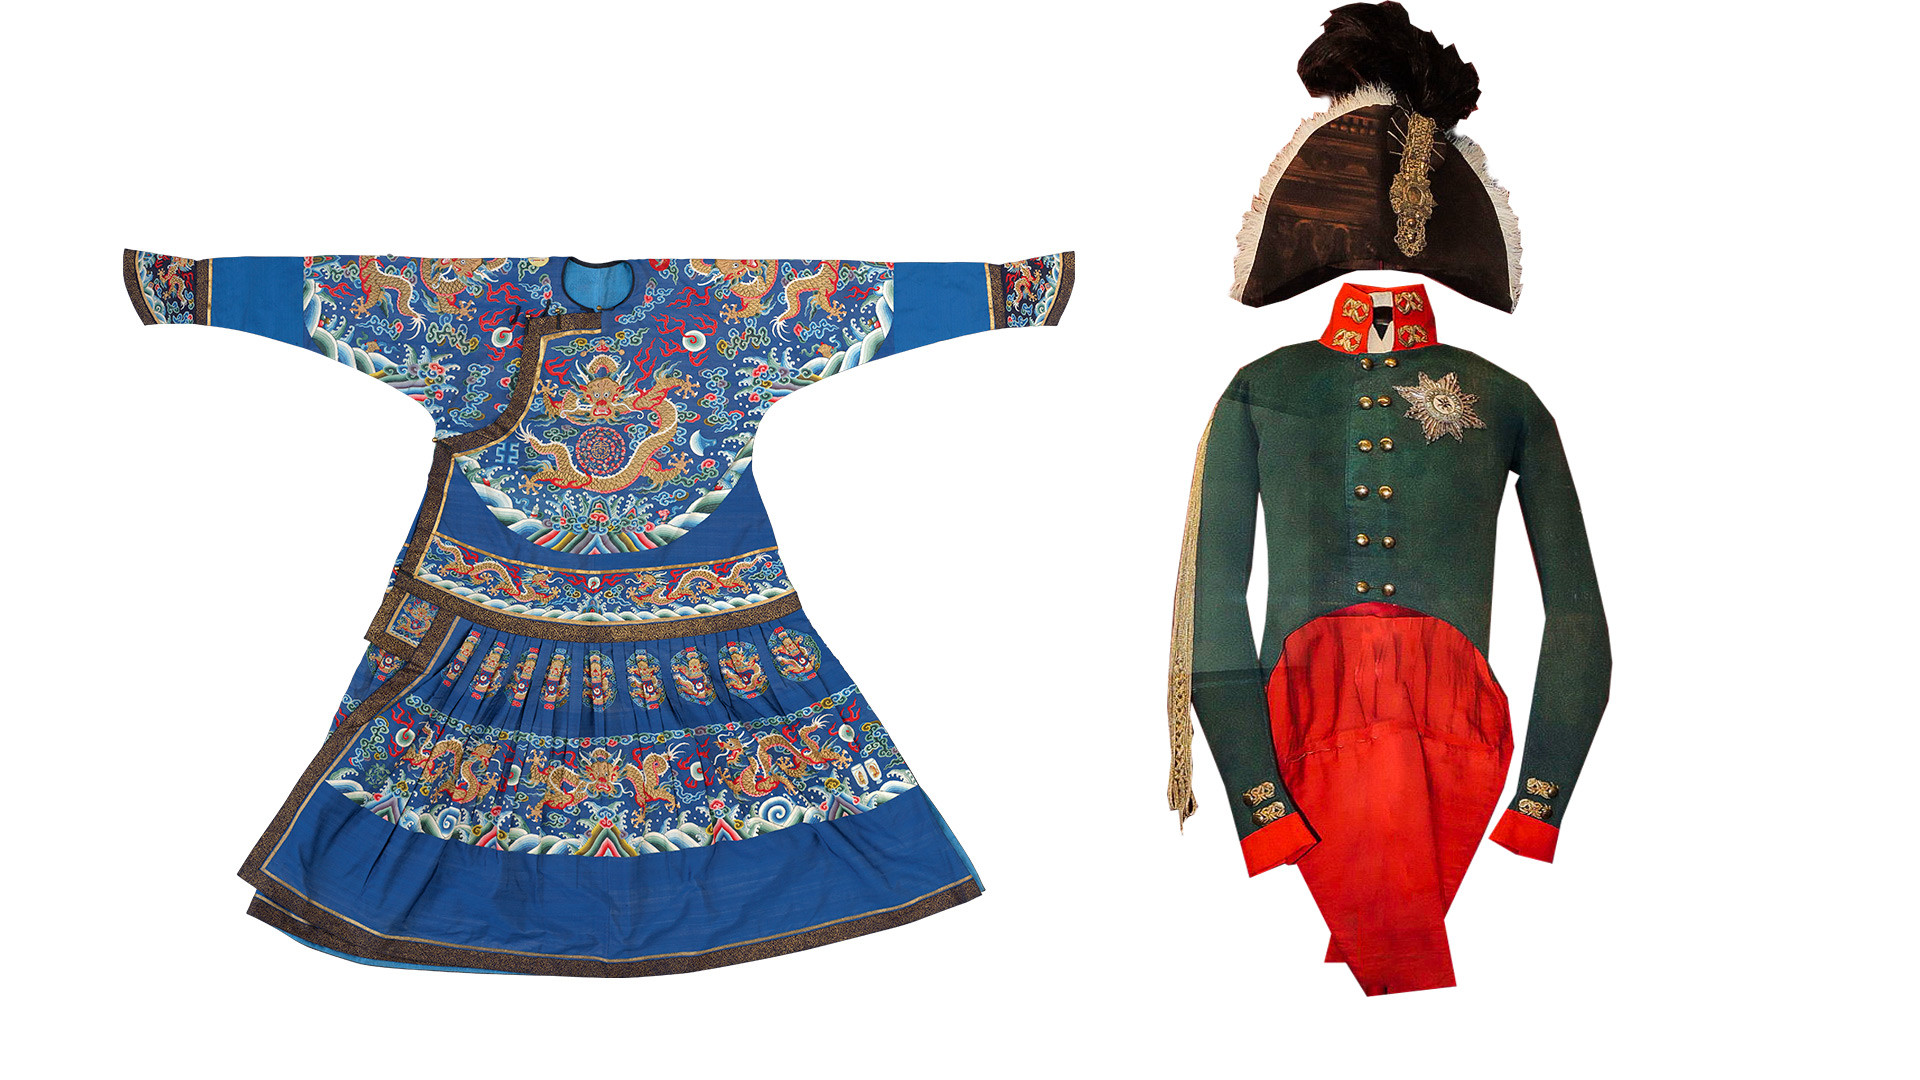 左：皇帝の絹の式服、嘉慶帝の統治期 (1735-1796)。右：ロシアの皇帝、アレクサンドル1世の戴冠衣装。
